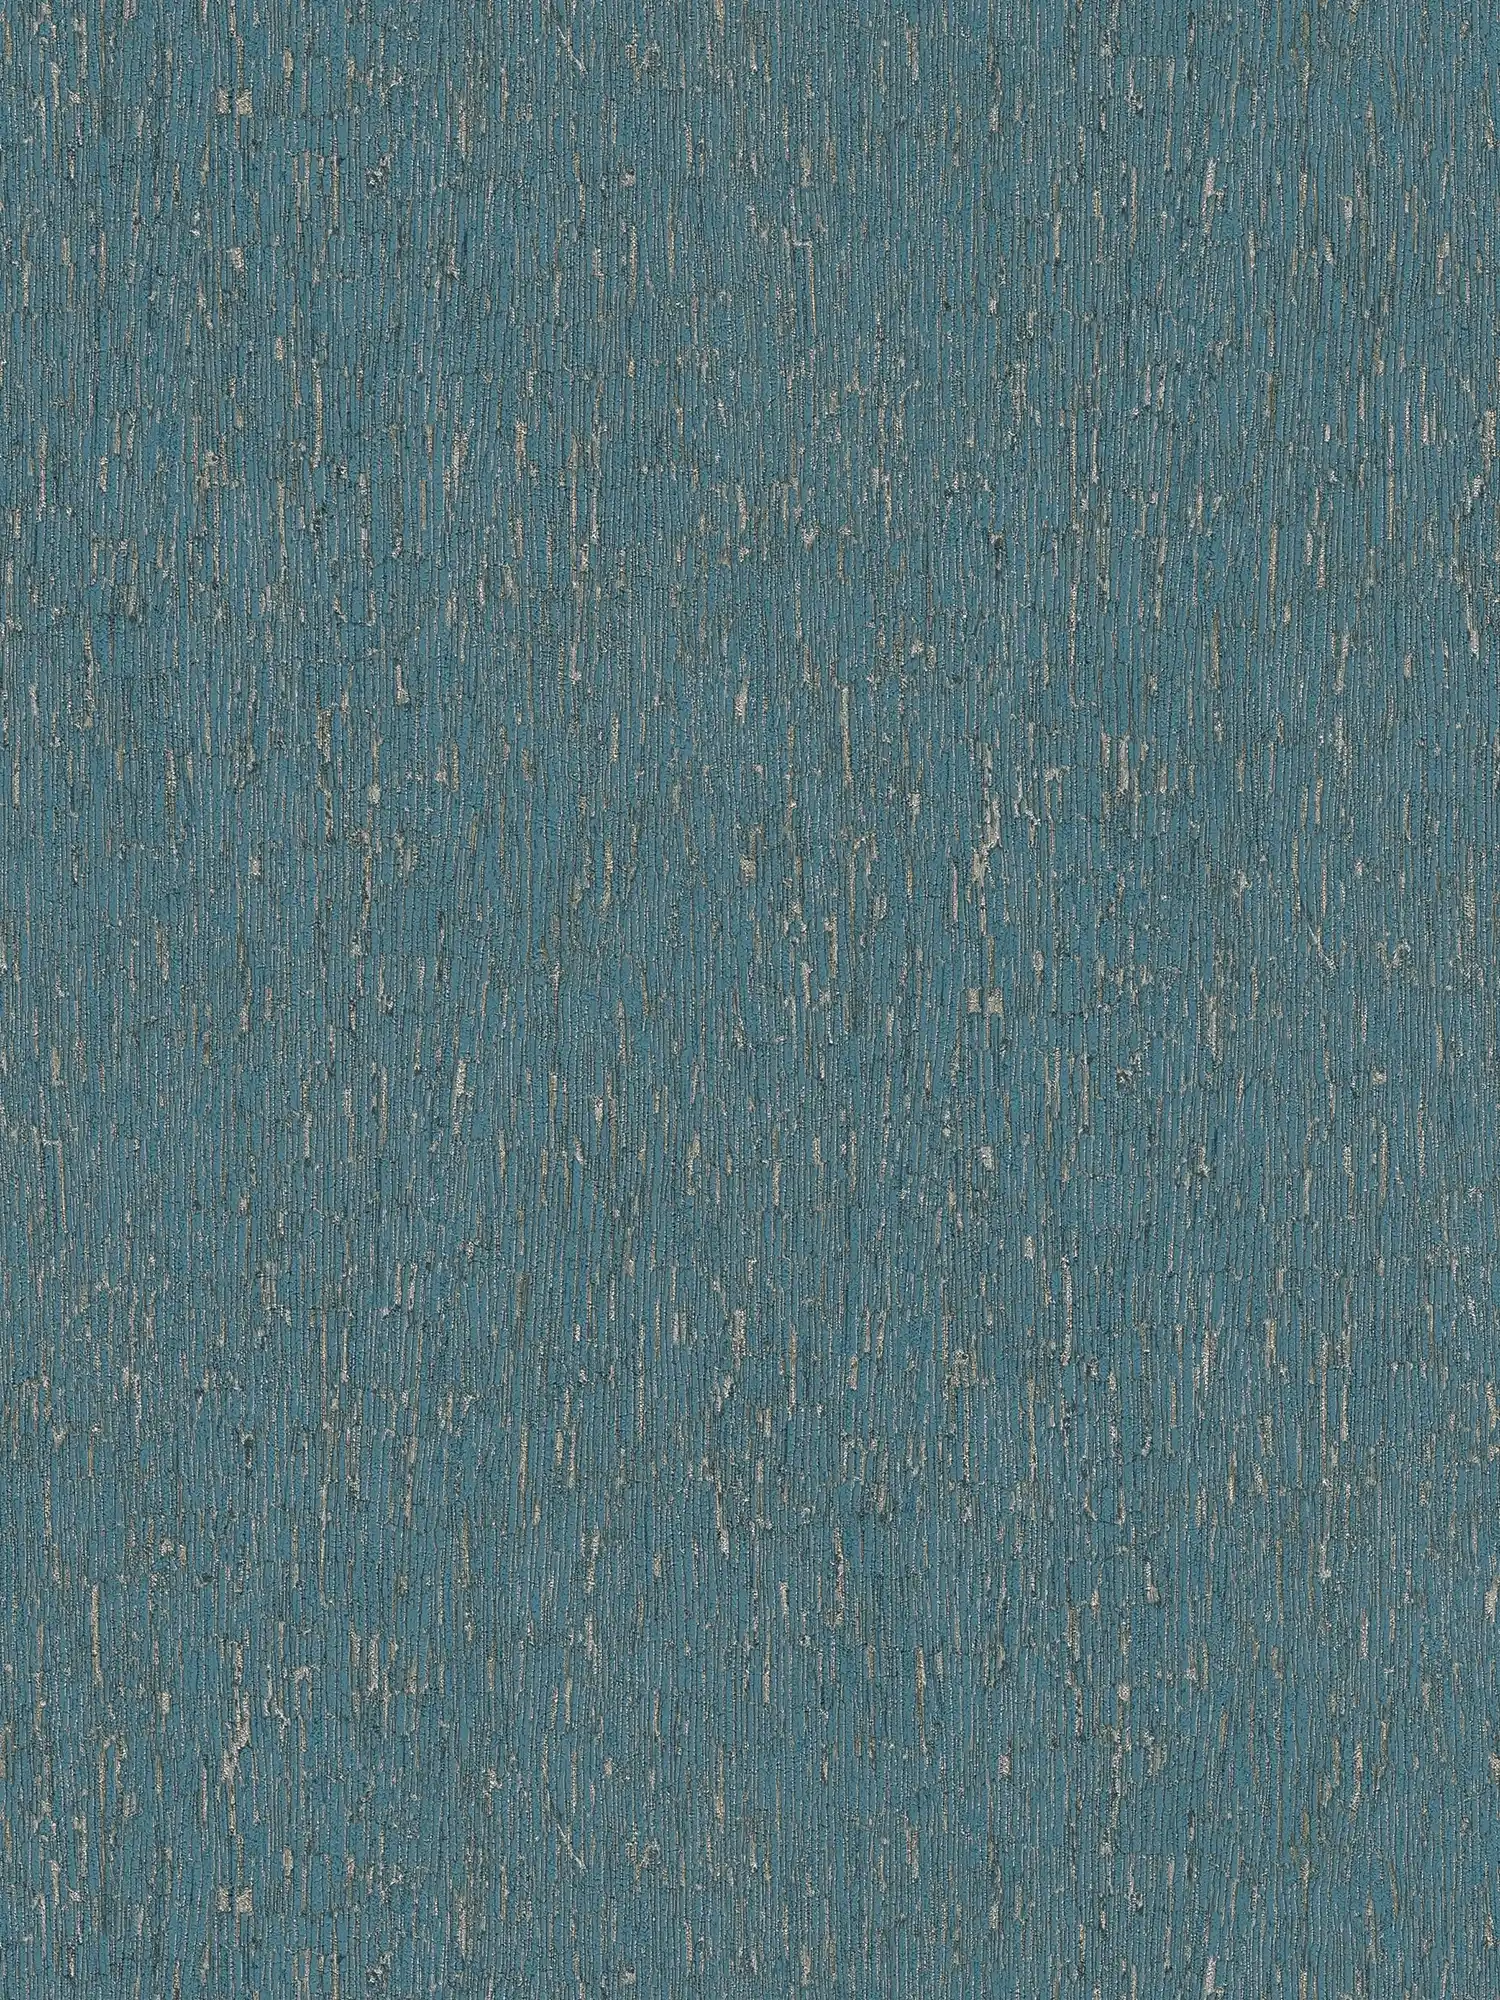 Papel pintado no tejido con aspecto de escayola y detalles dorados - azul, petróleo, plata
